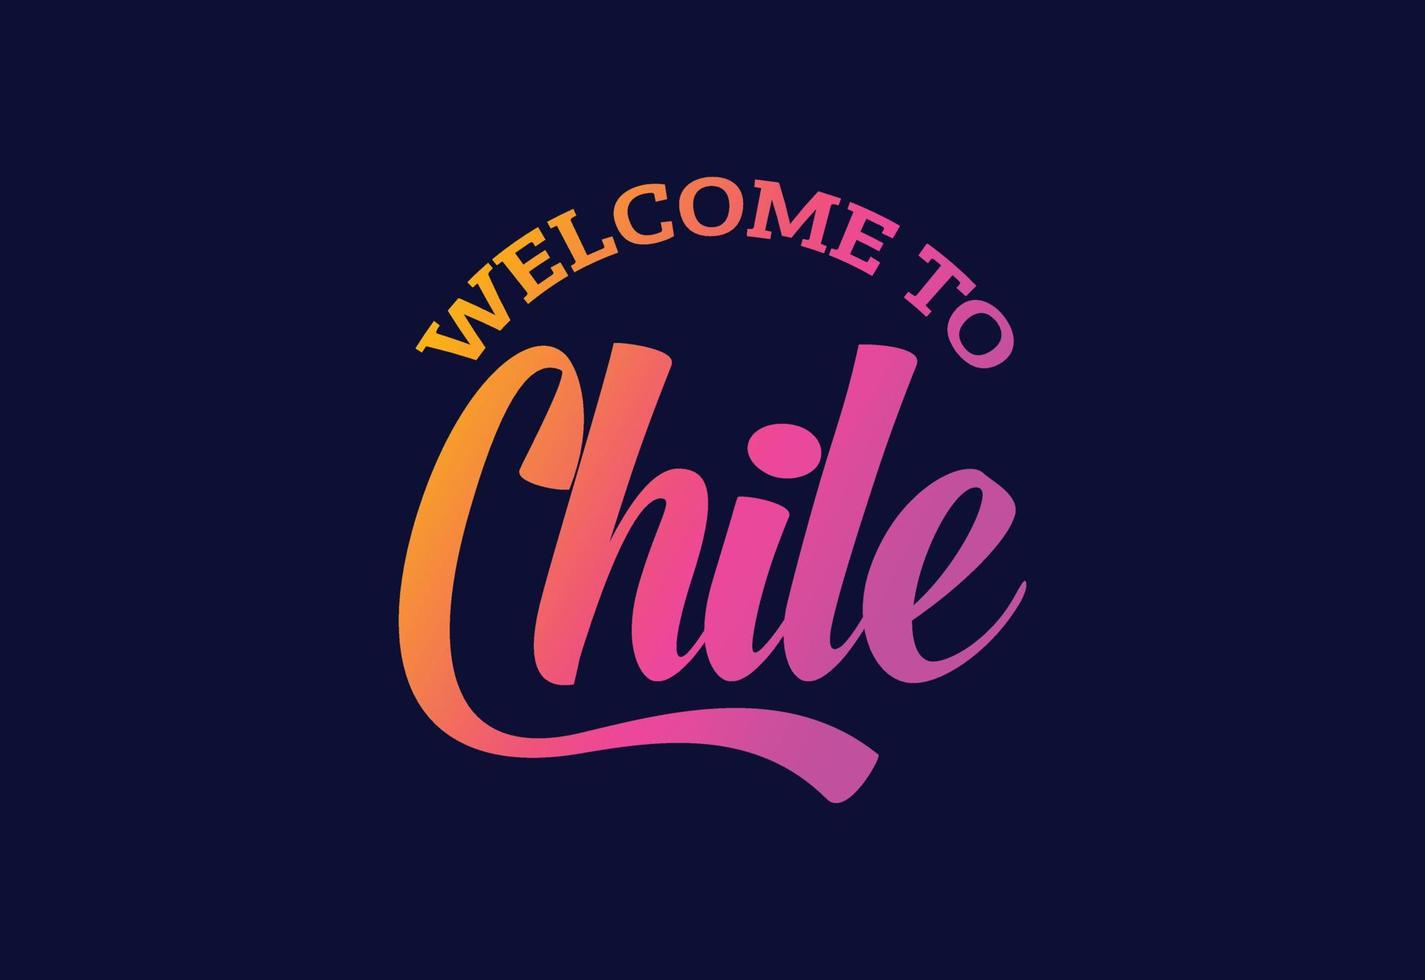 välkommen till chile ordtext kreativ teckensnittsdesignillustration. välkomstskylt vektor